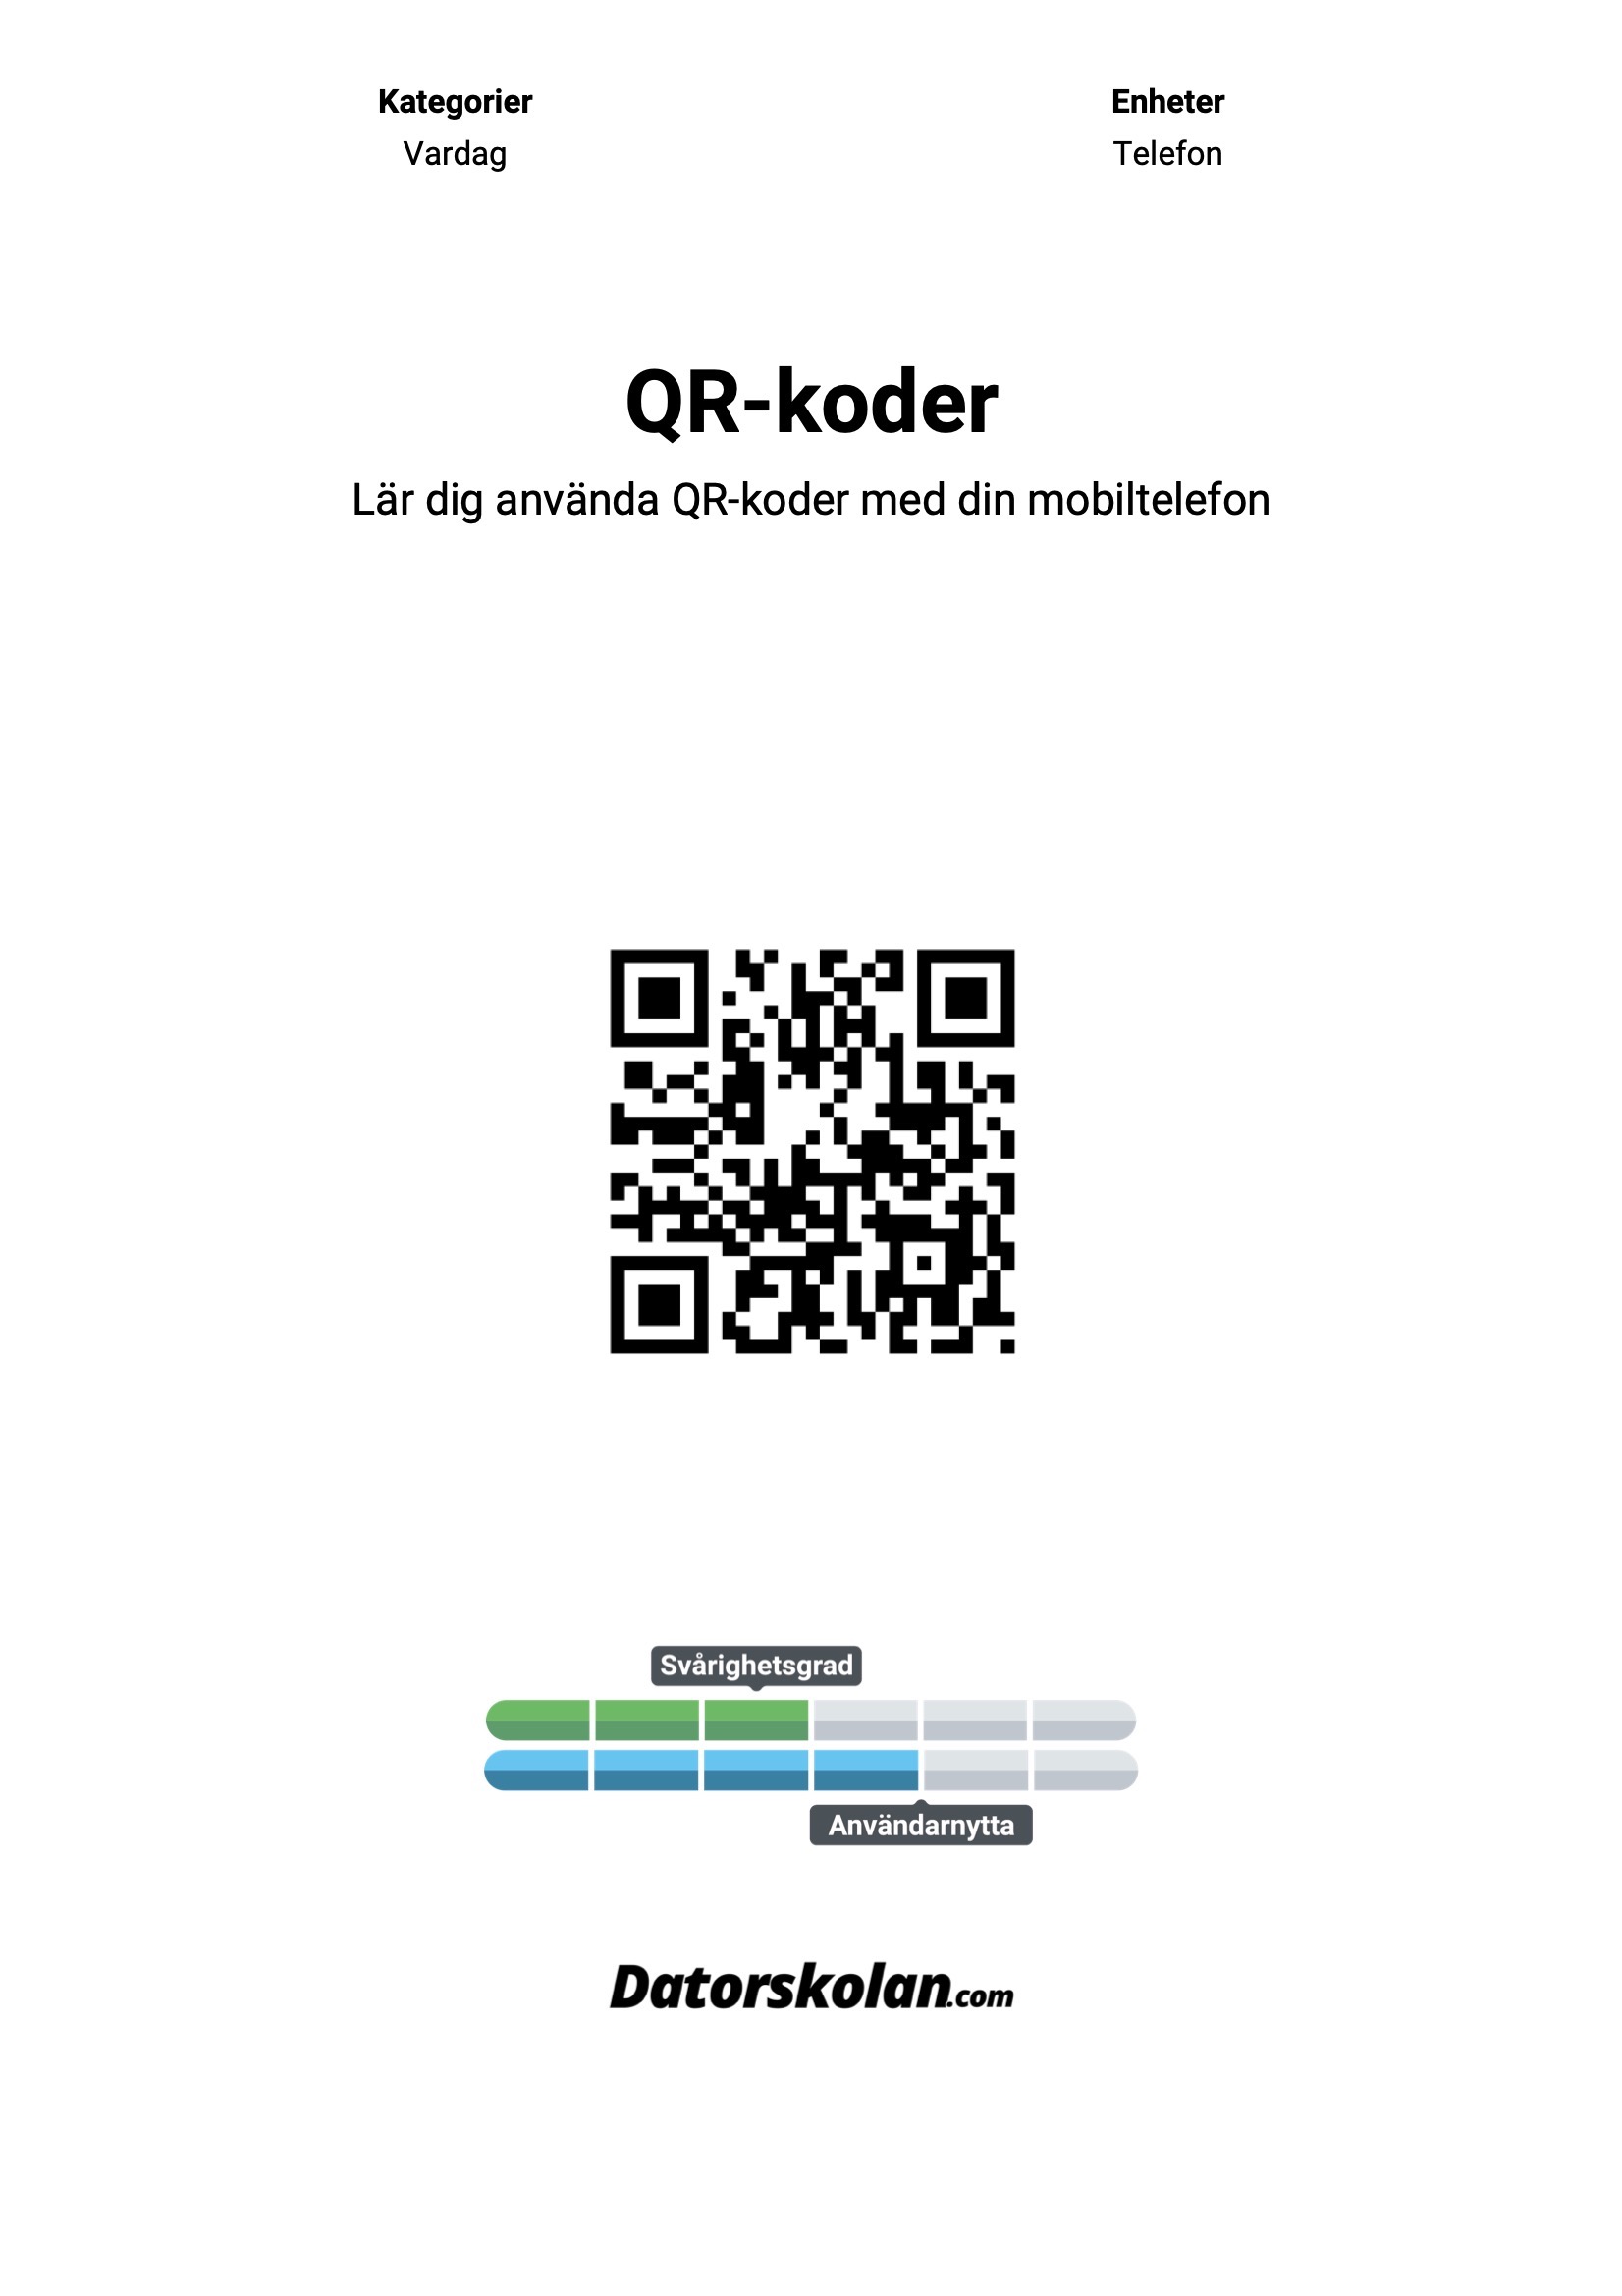 Framsidan av DigiGuiden om QR-koder